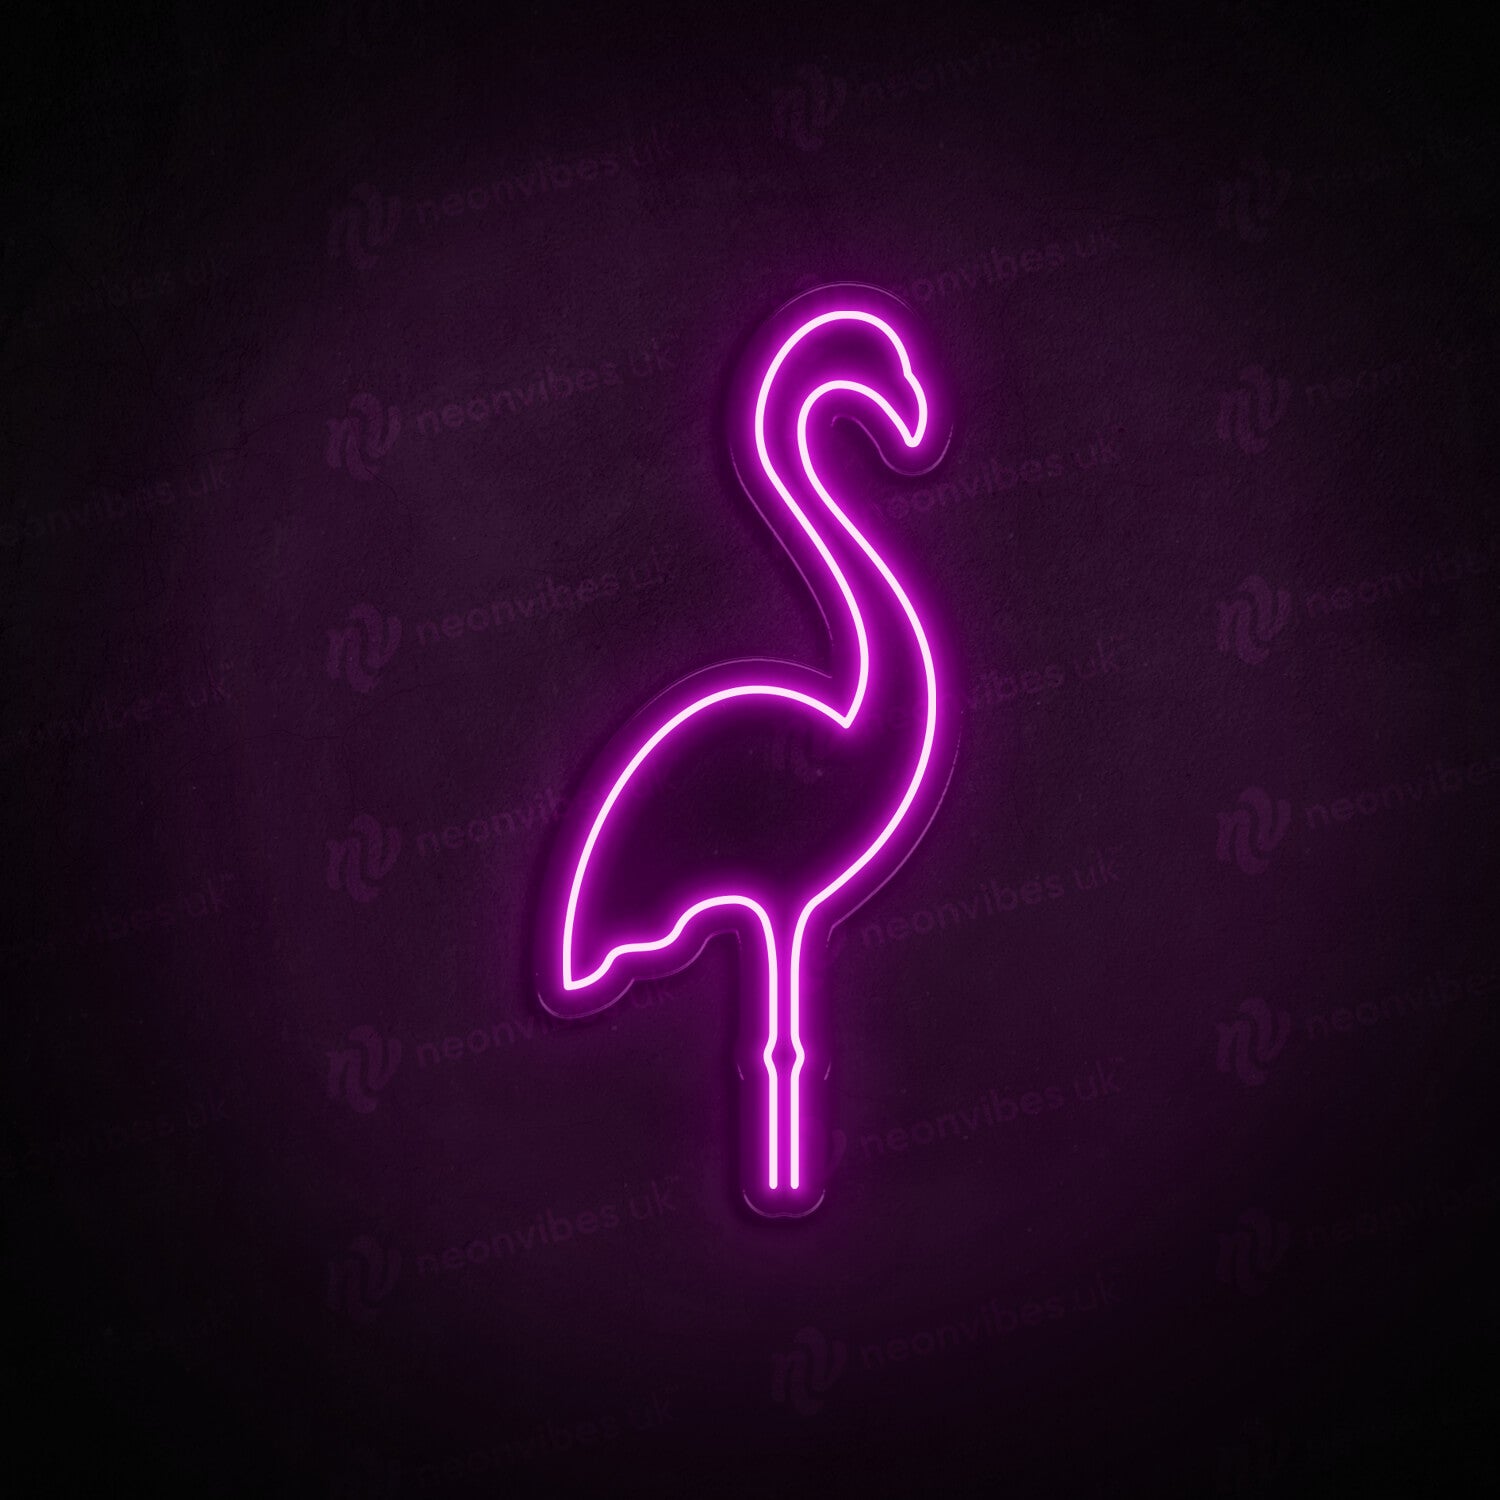 Flamingo neon sign